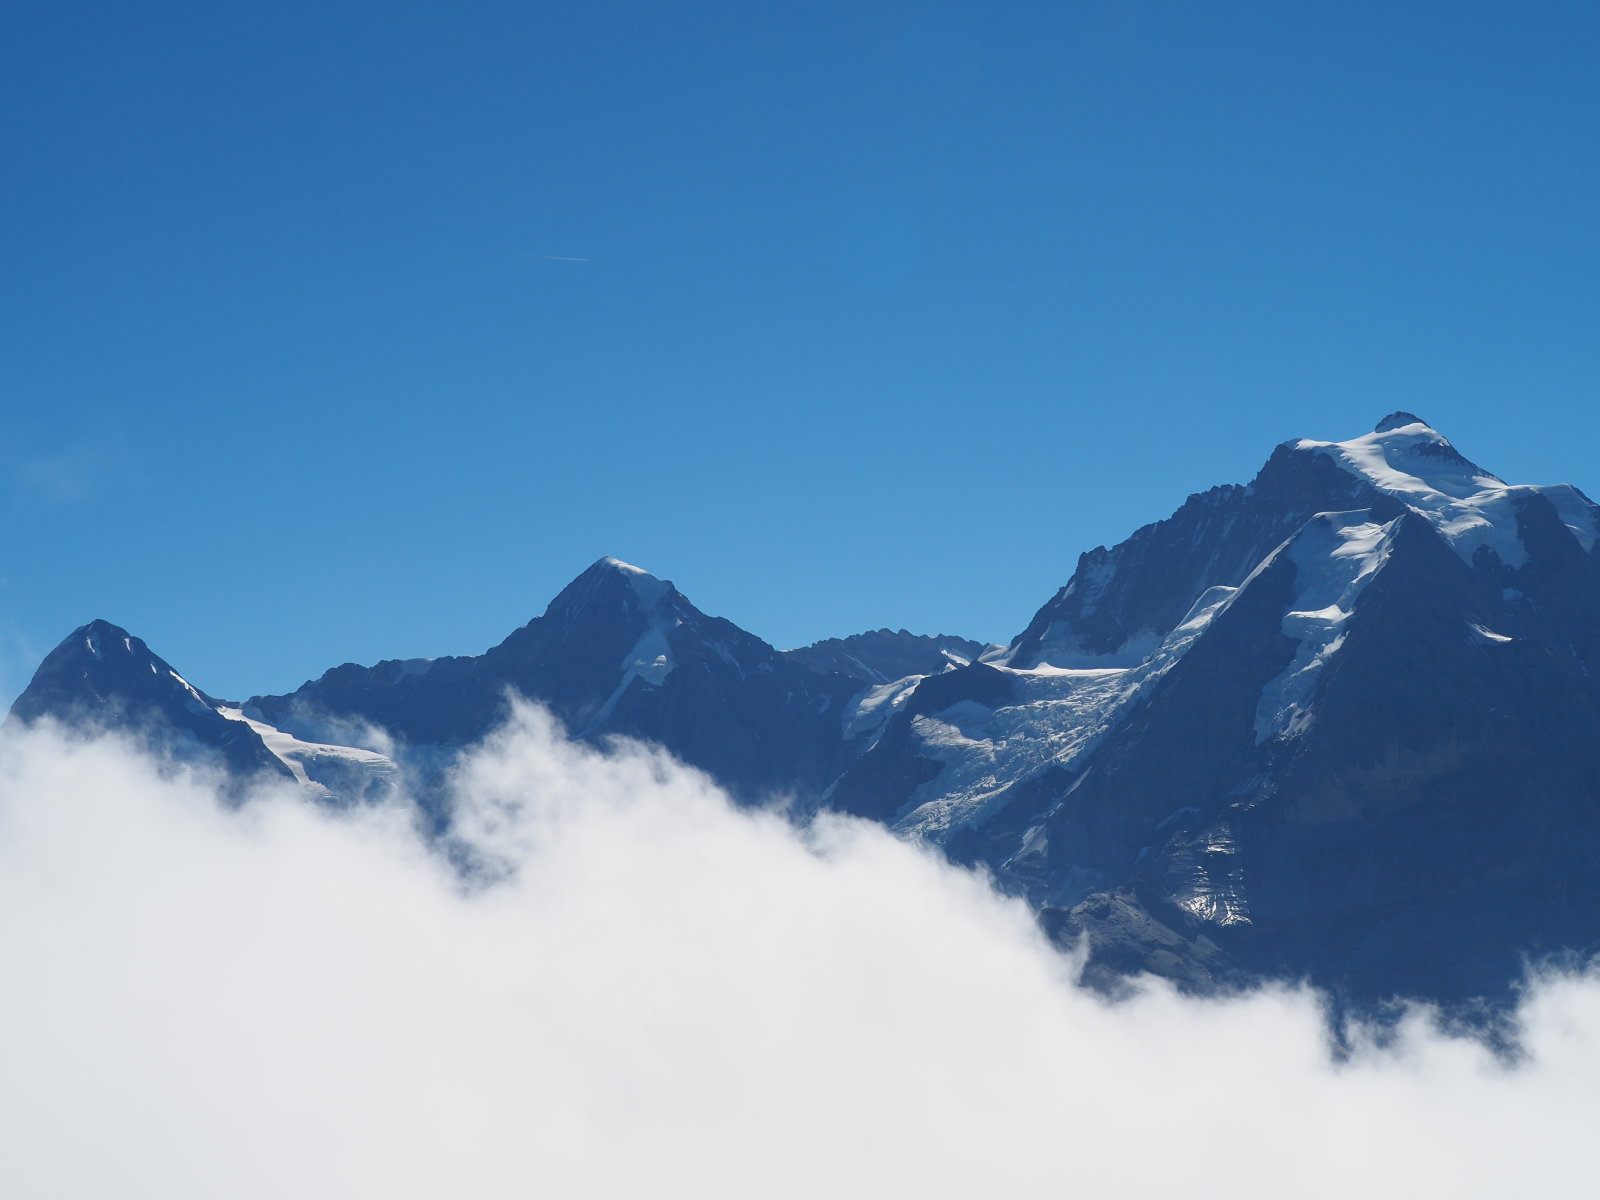 Eiger, Mönch, Jungfrau a Brigről. Egy kis felhő zavarja a szép tájat